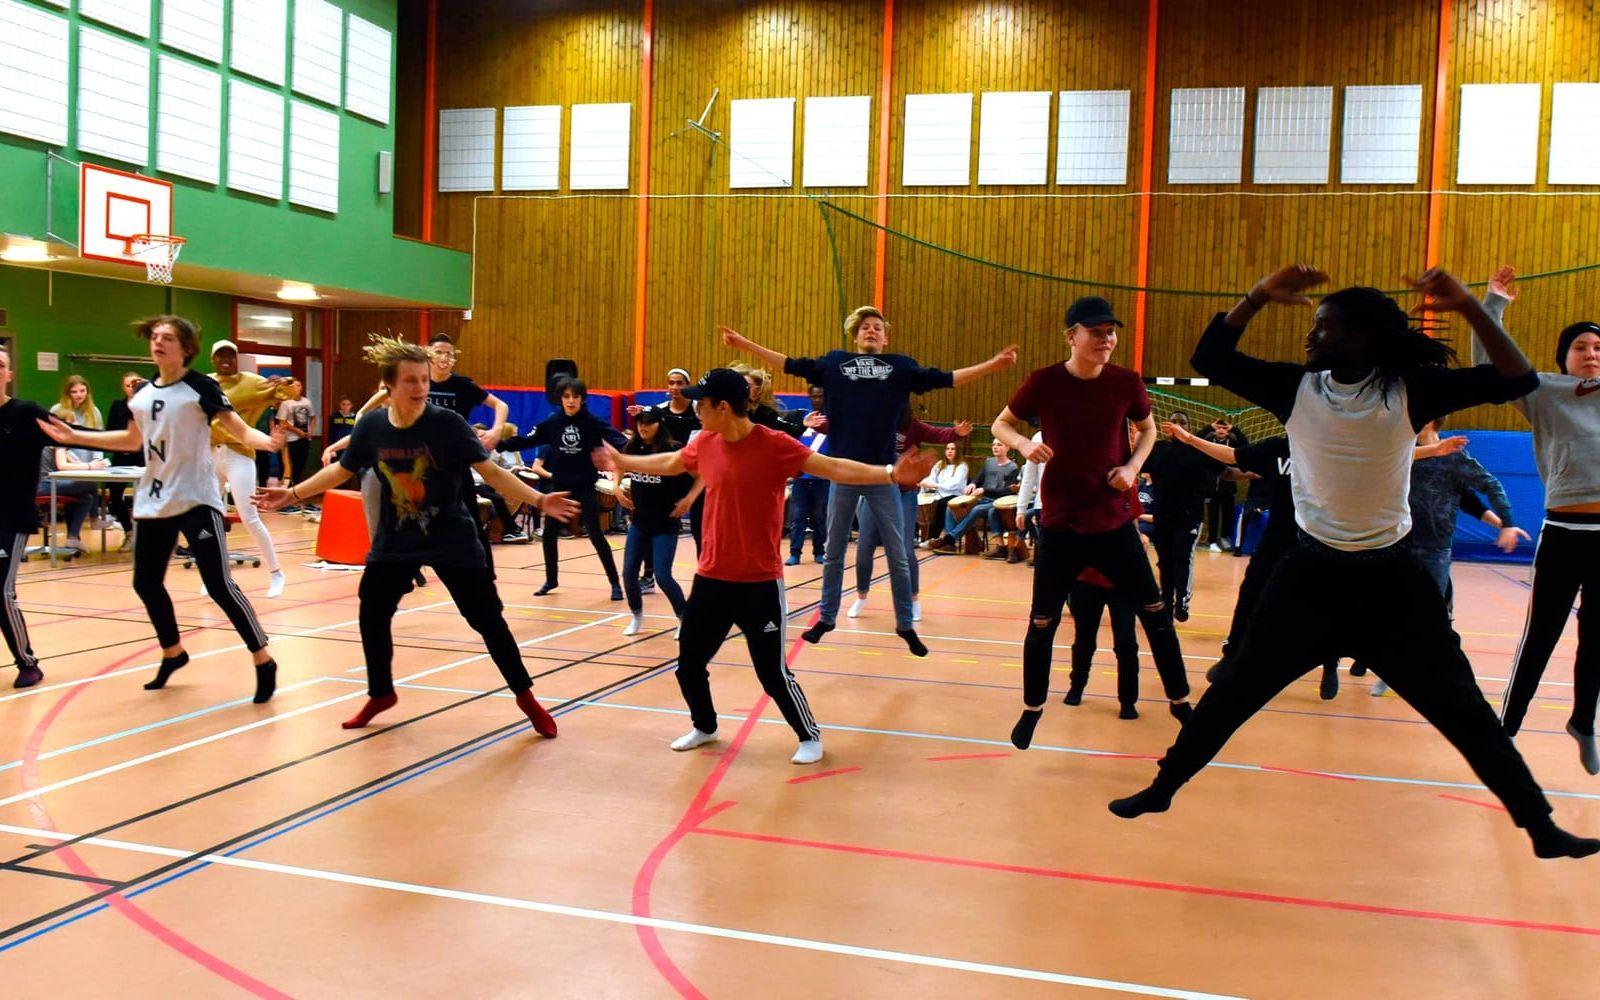 Dansgruppen under ledning av Asanne Lasane. Bild: Martin Erlandsson